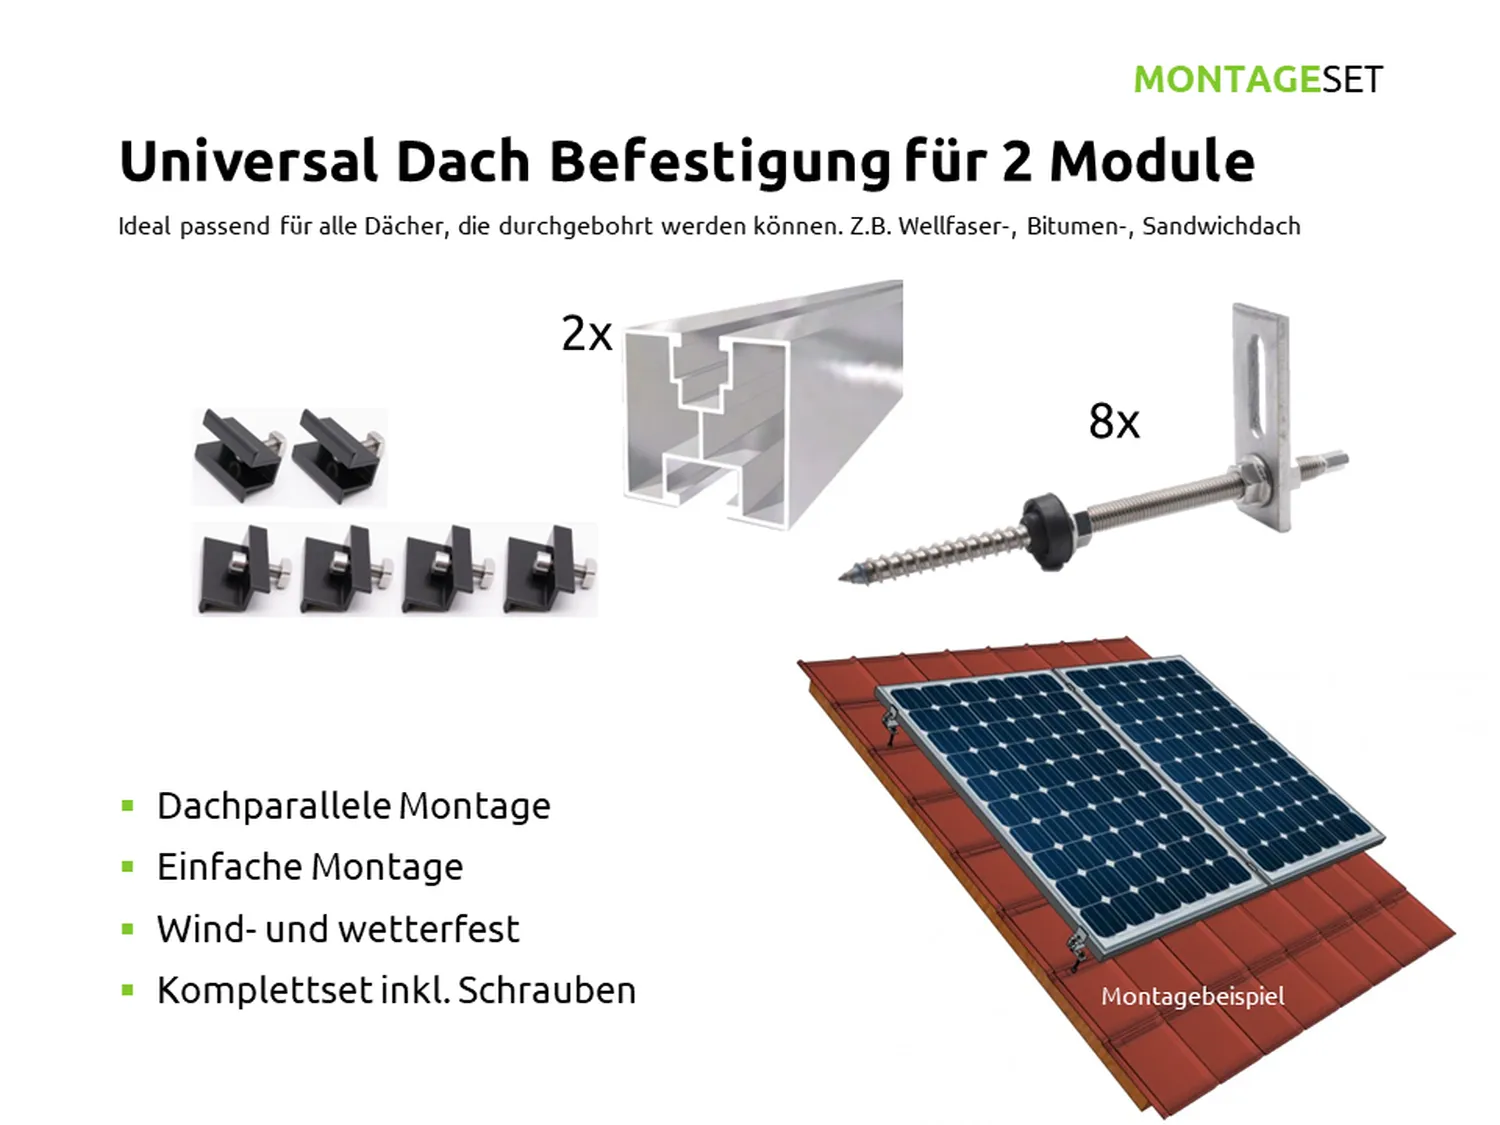 Universal Dach Befestigung für 2 PV Module